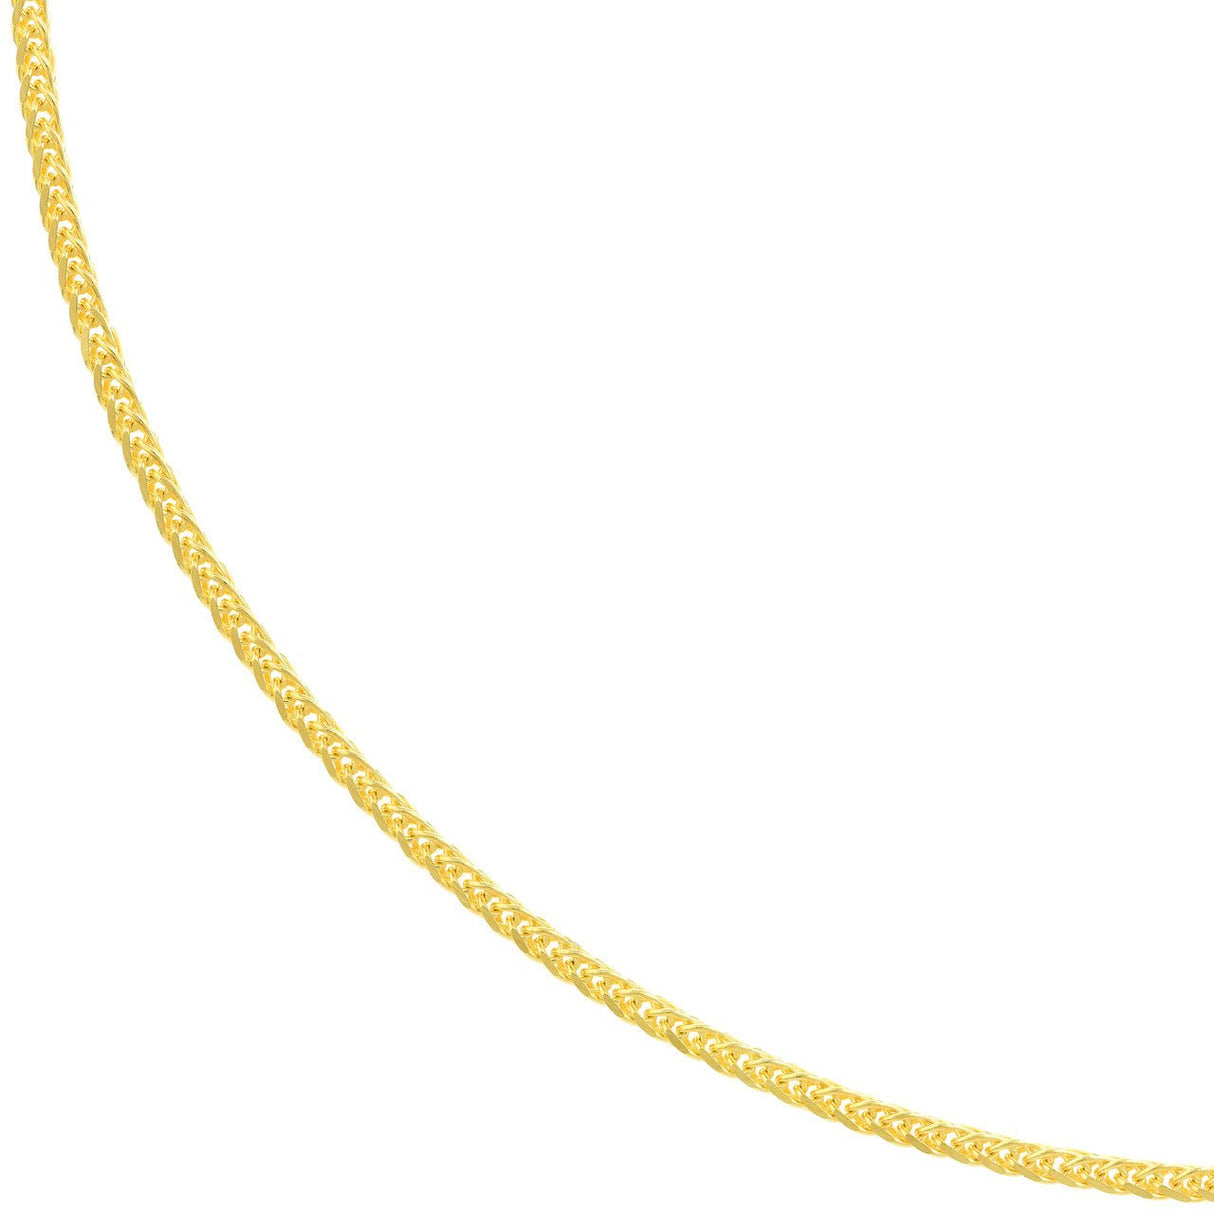 14K Gold Chain, 16", 1.25mm Square Wheat Chain with Lobster Lock, Gold Layered Chain, Gold Layered Necklaces, - Diamond Origin